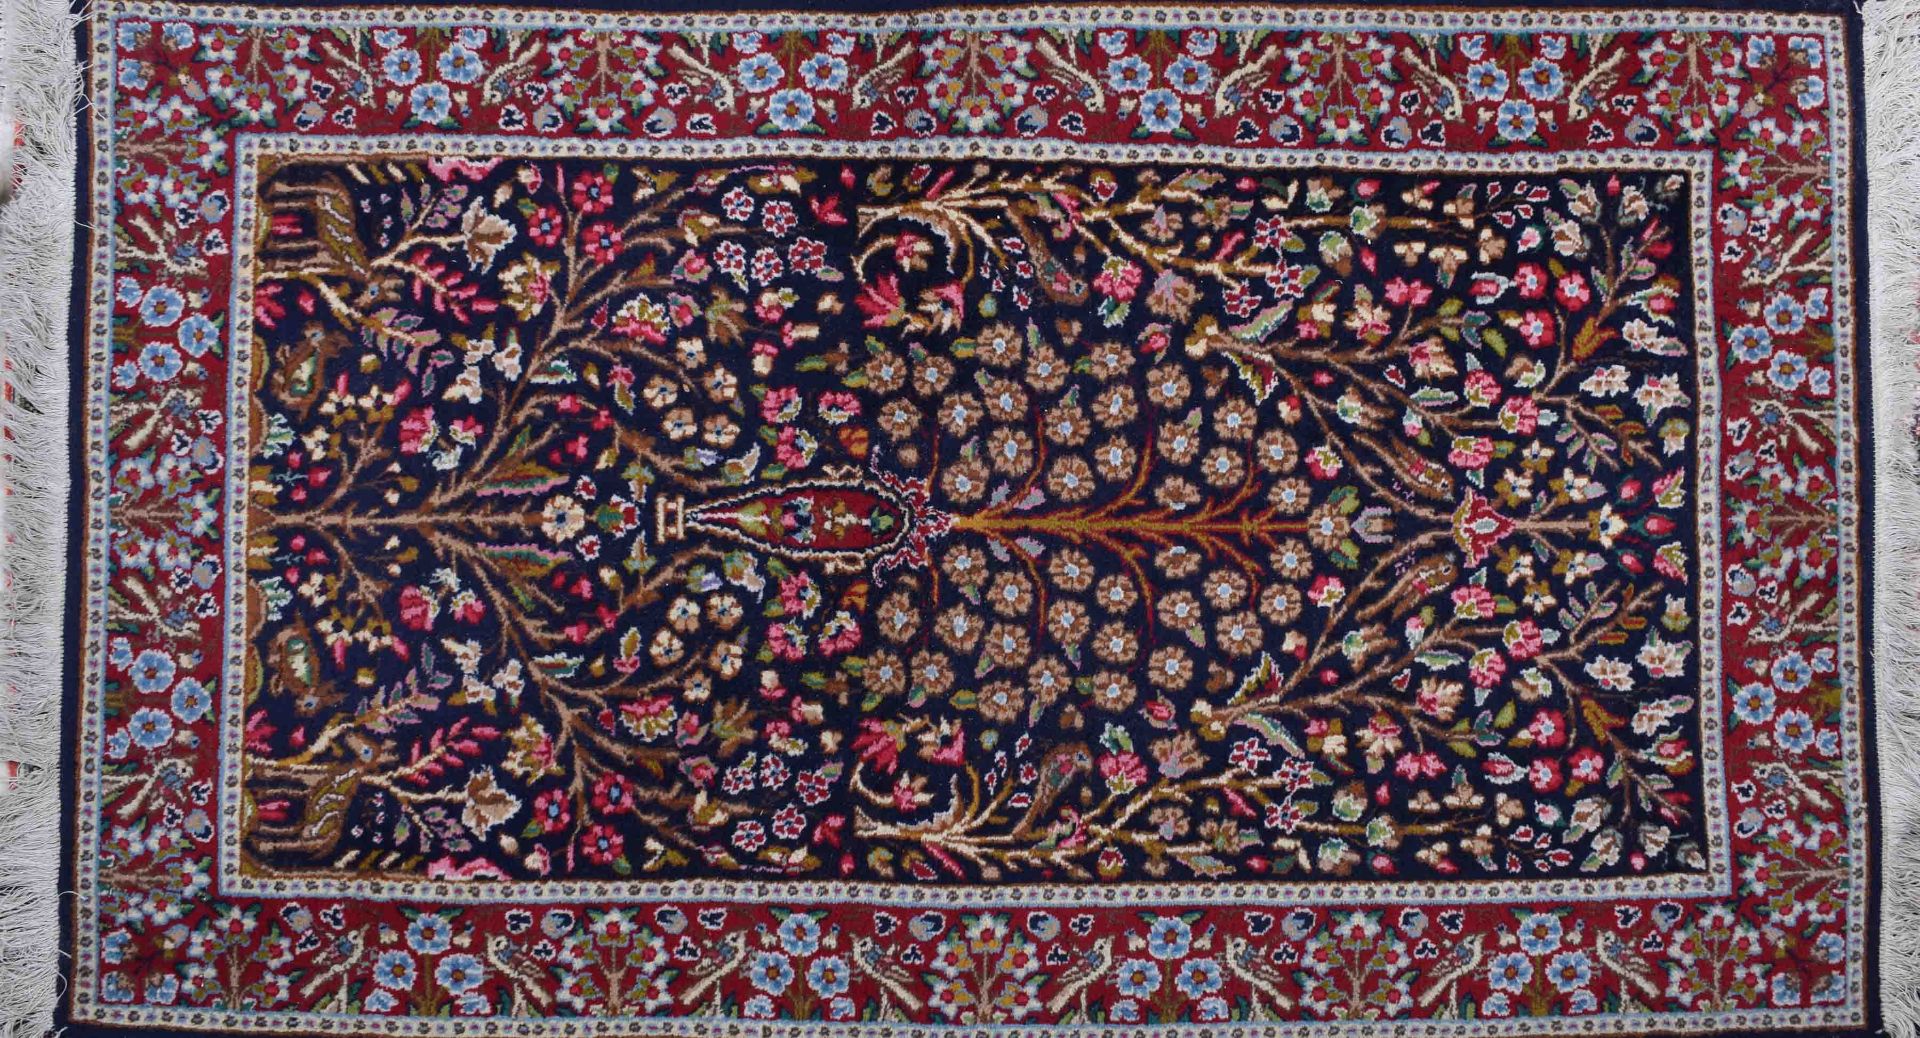 Teppich Teheran163 cm x 92 cmCarpet Tehran163 cm x 92 cm